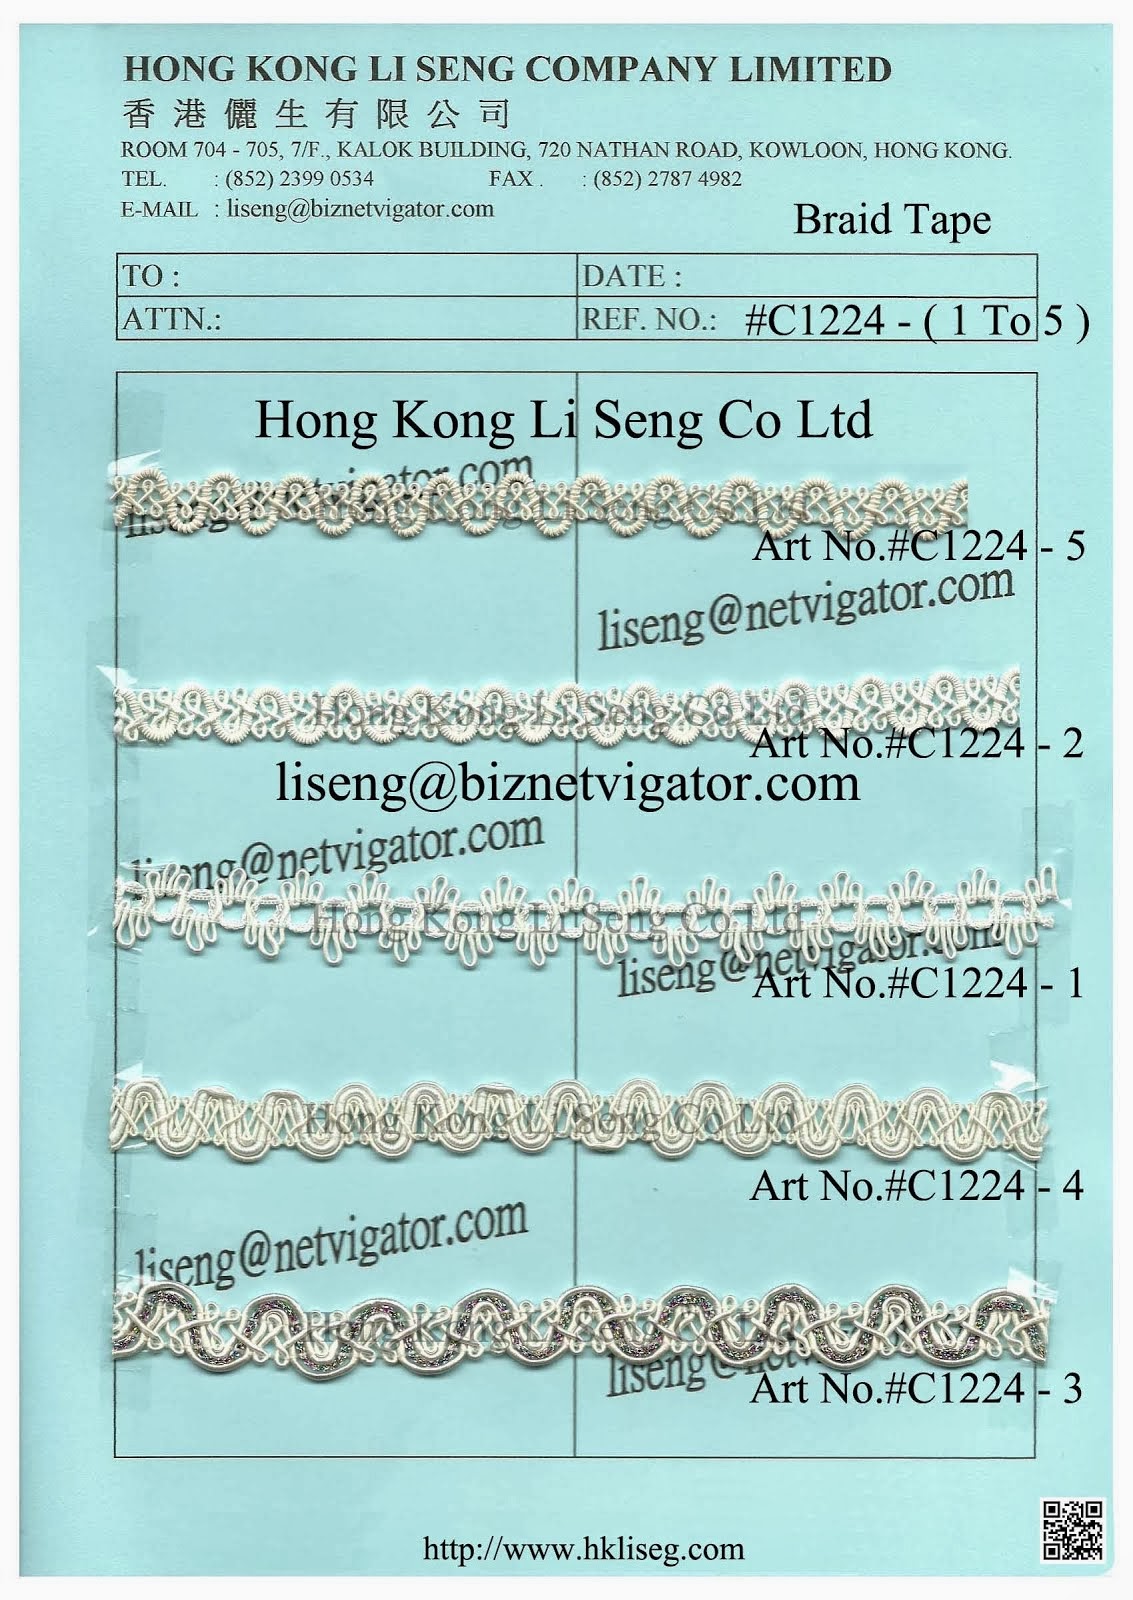 Braid Tape Manufacturer - Hong Kong Li Seng Co Ltd